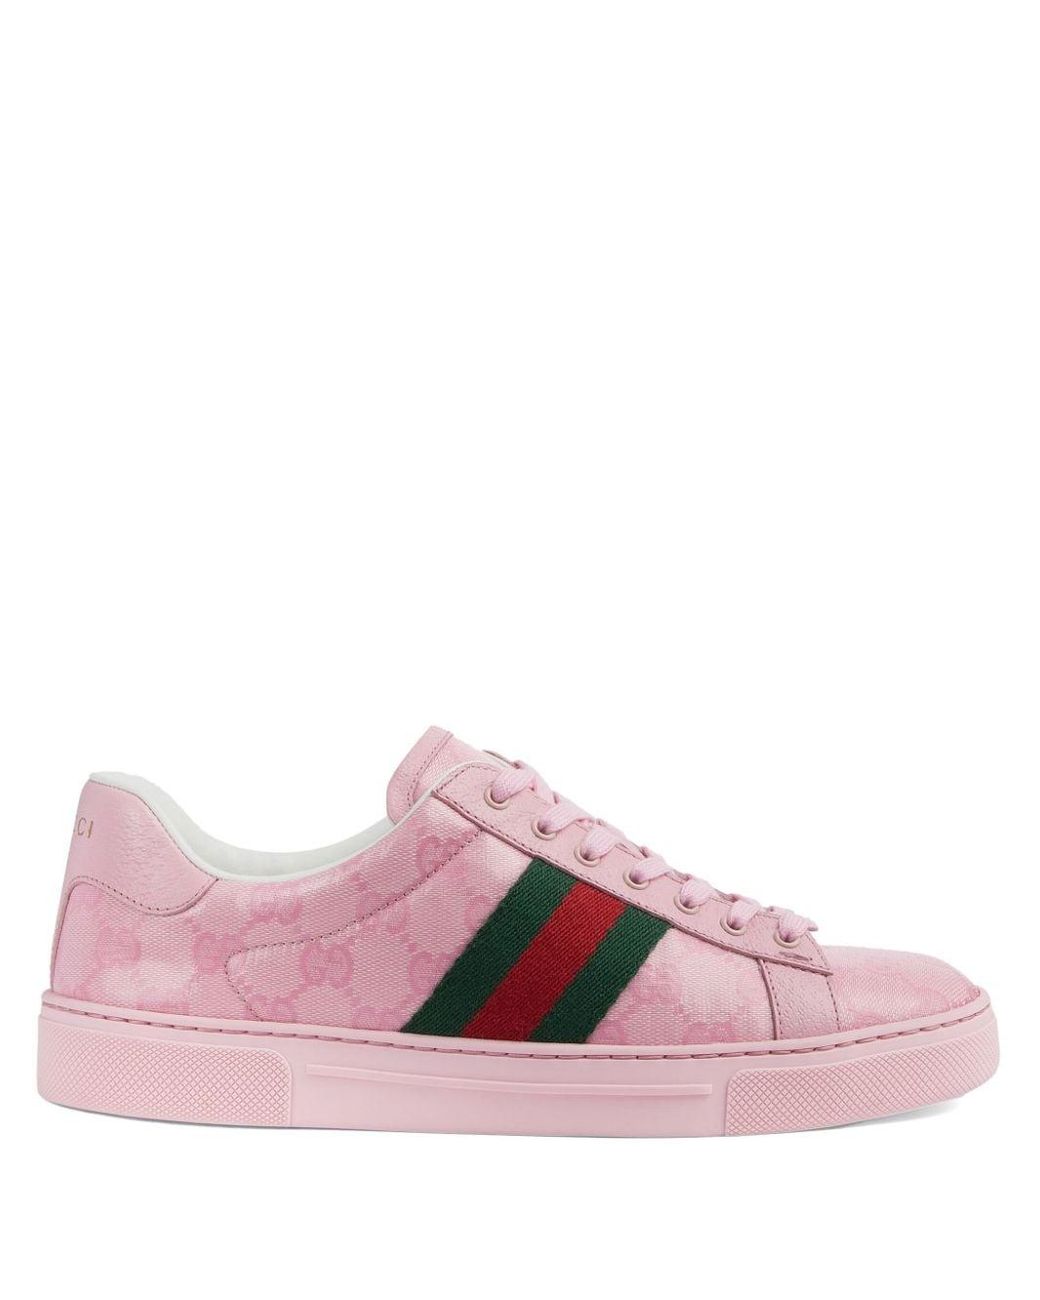 Gucci Ace Web Sneakers in het Roze | Lyst NL